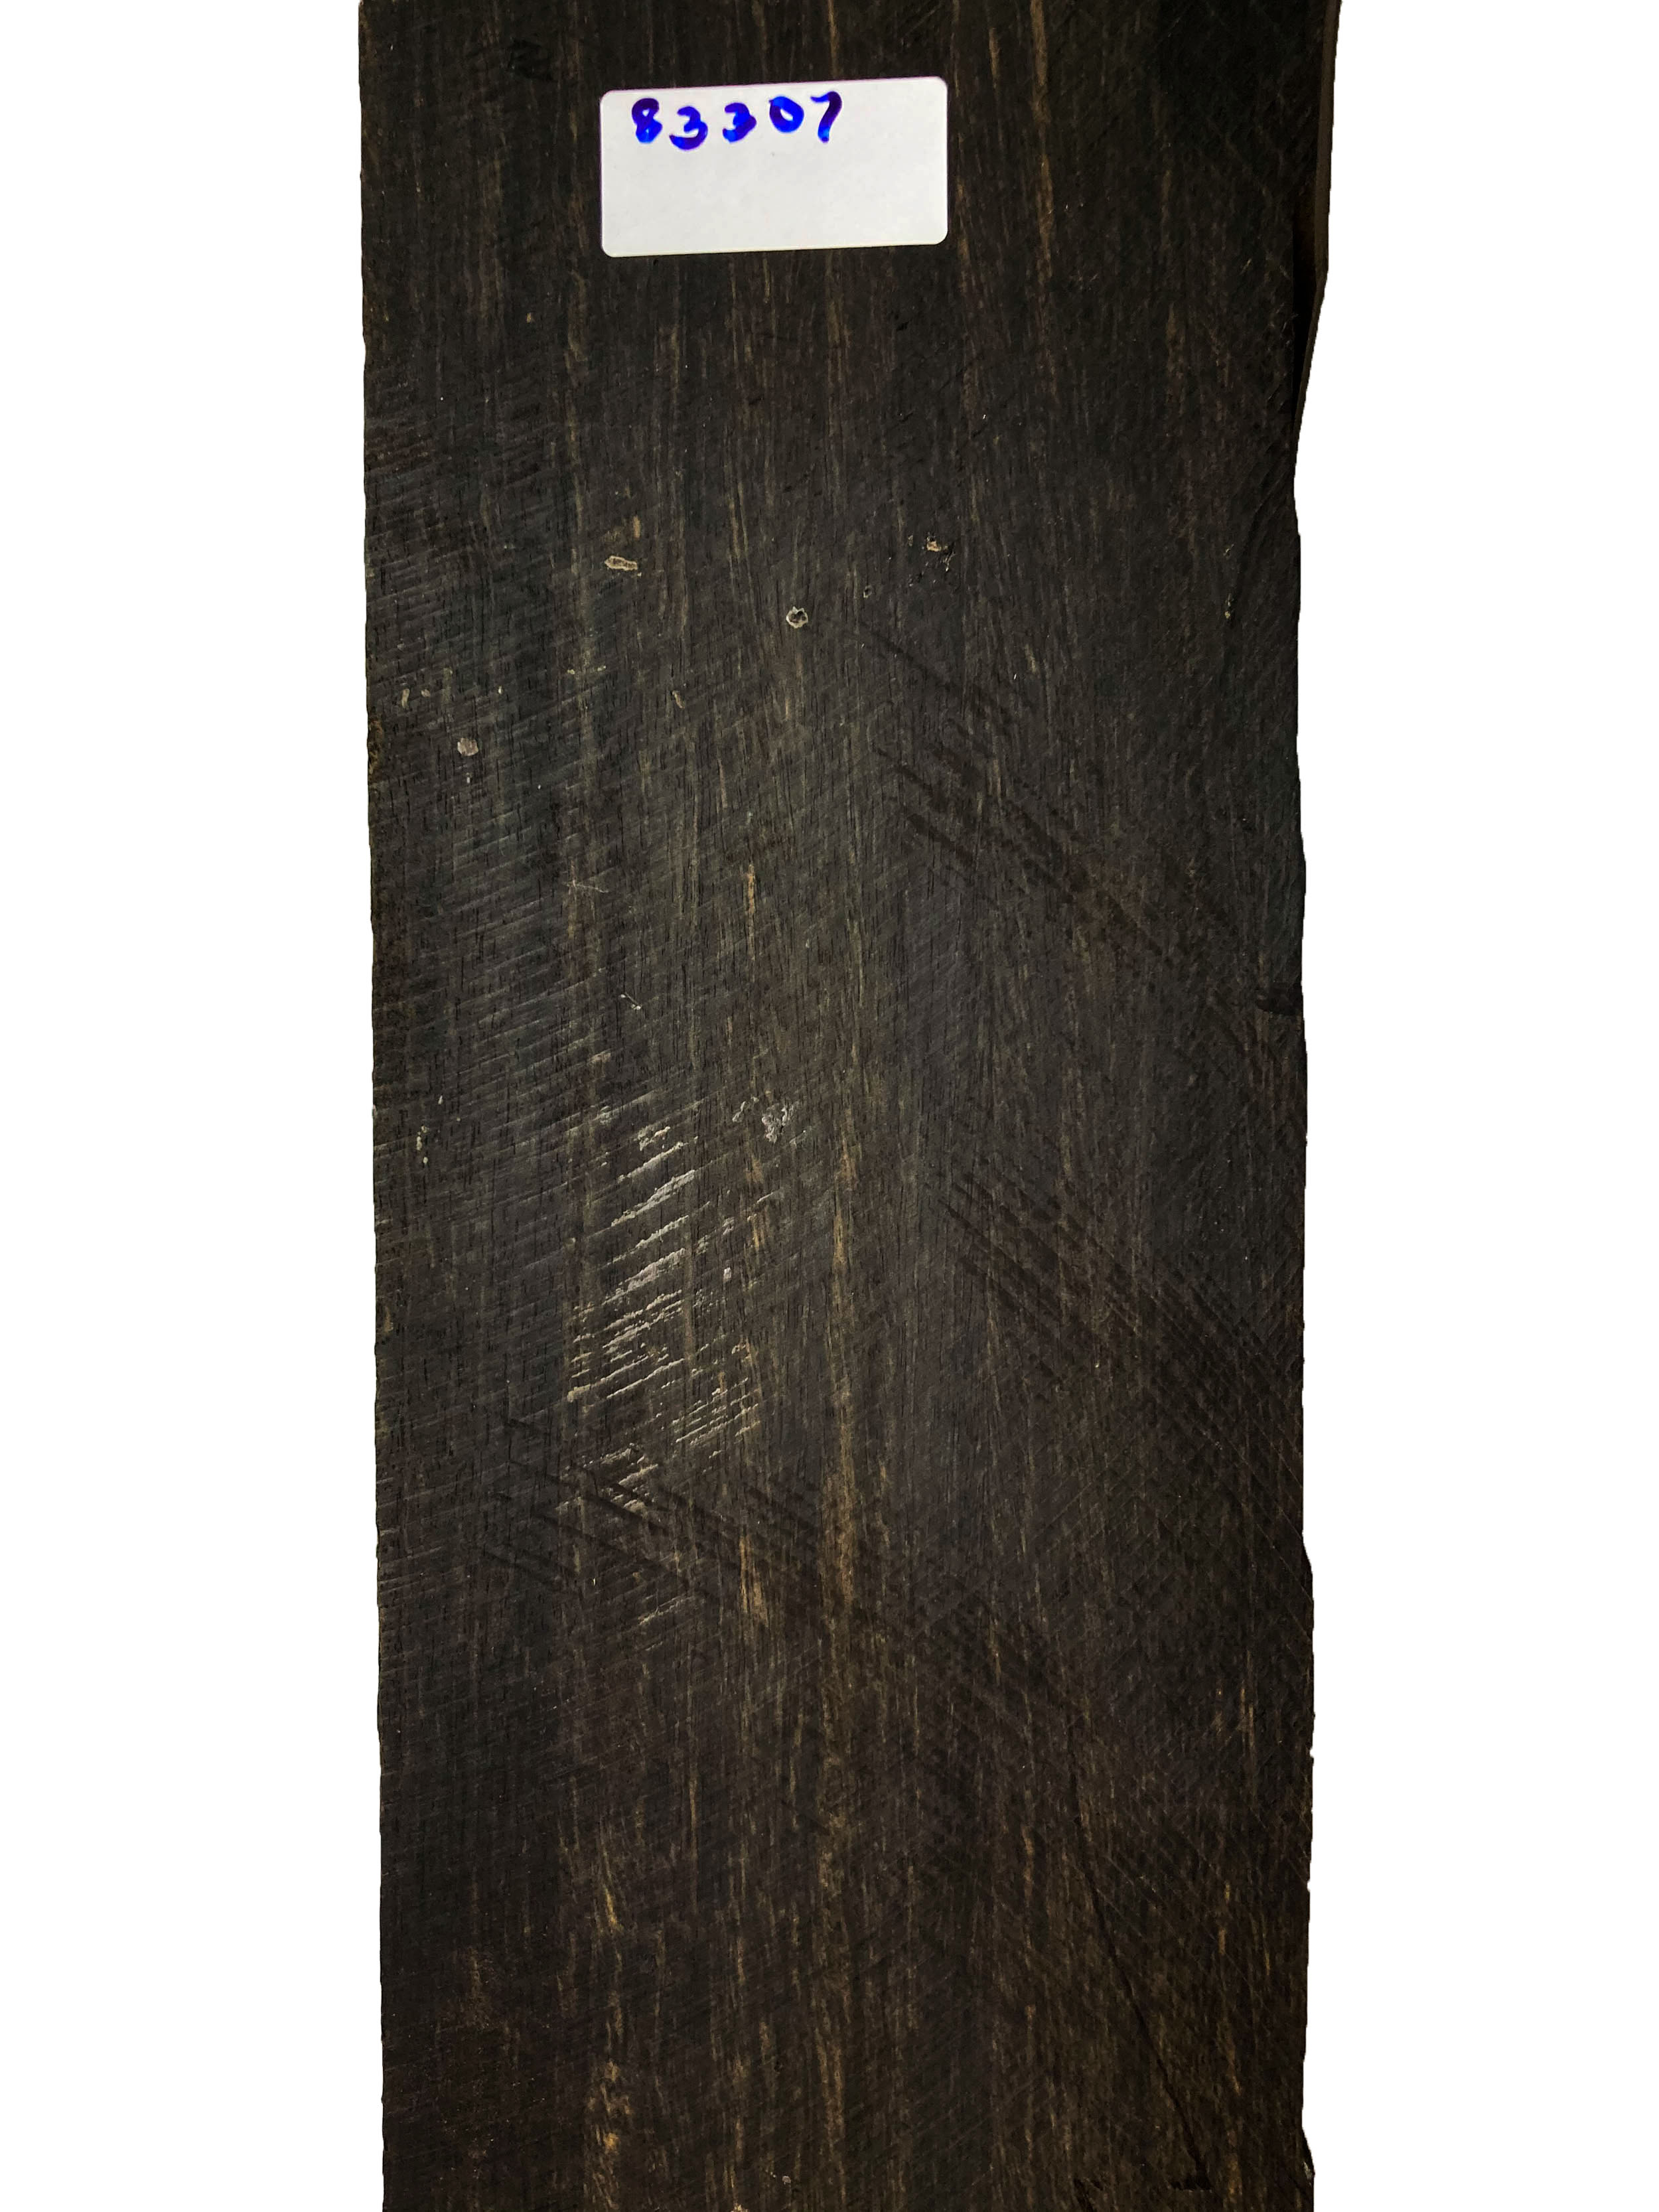 Gaboon Ebony Exotic Wood Blanks & Turning Wood